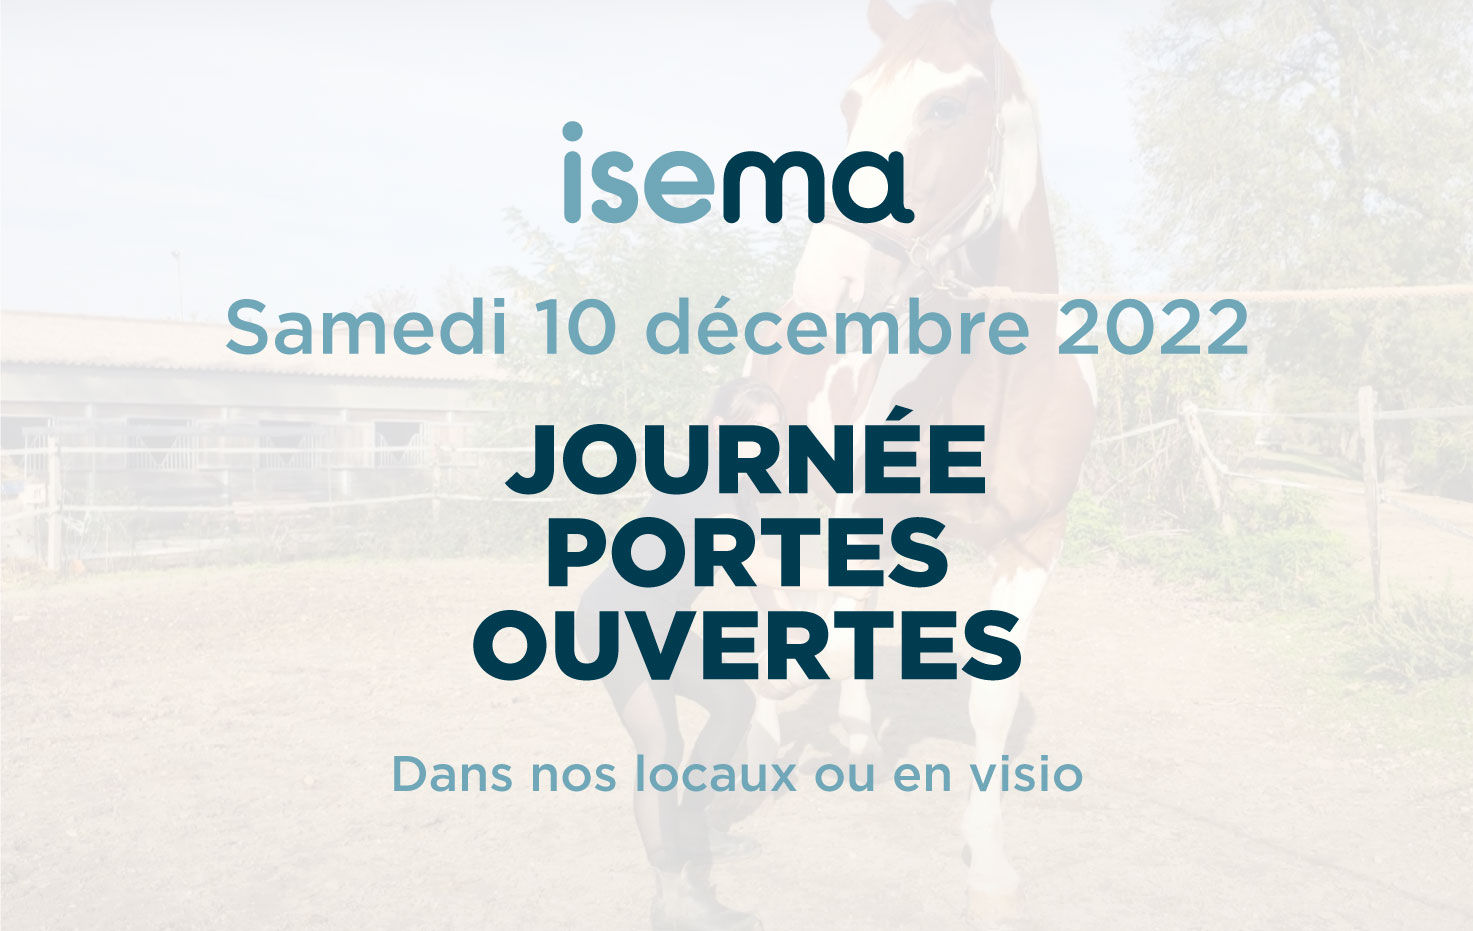 Journee-portes-ouvertes-ISEMA-Bordeaux-1er-octobre-2022